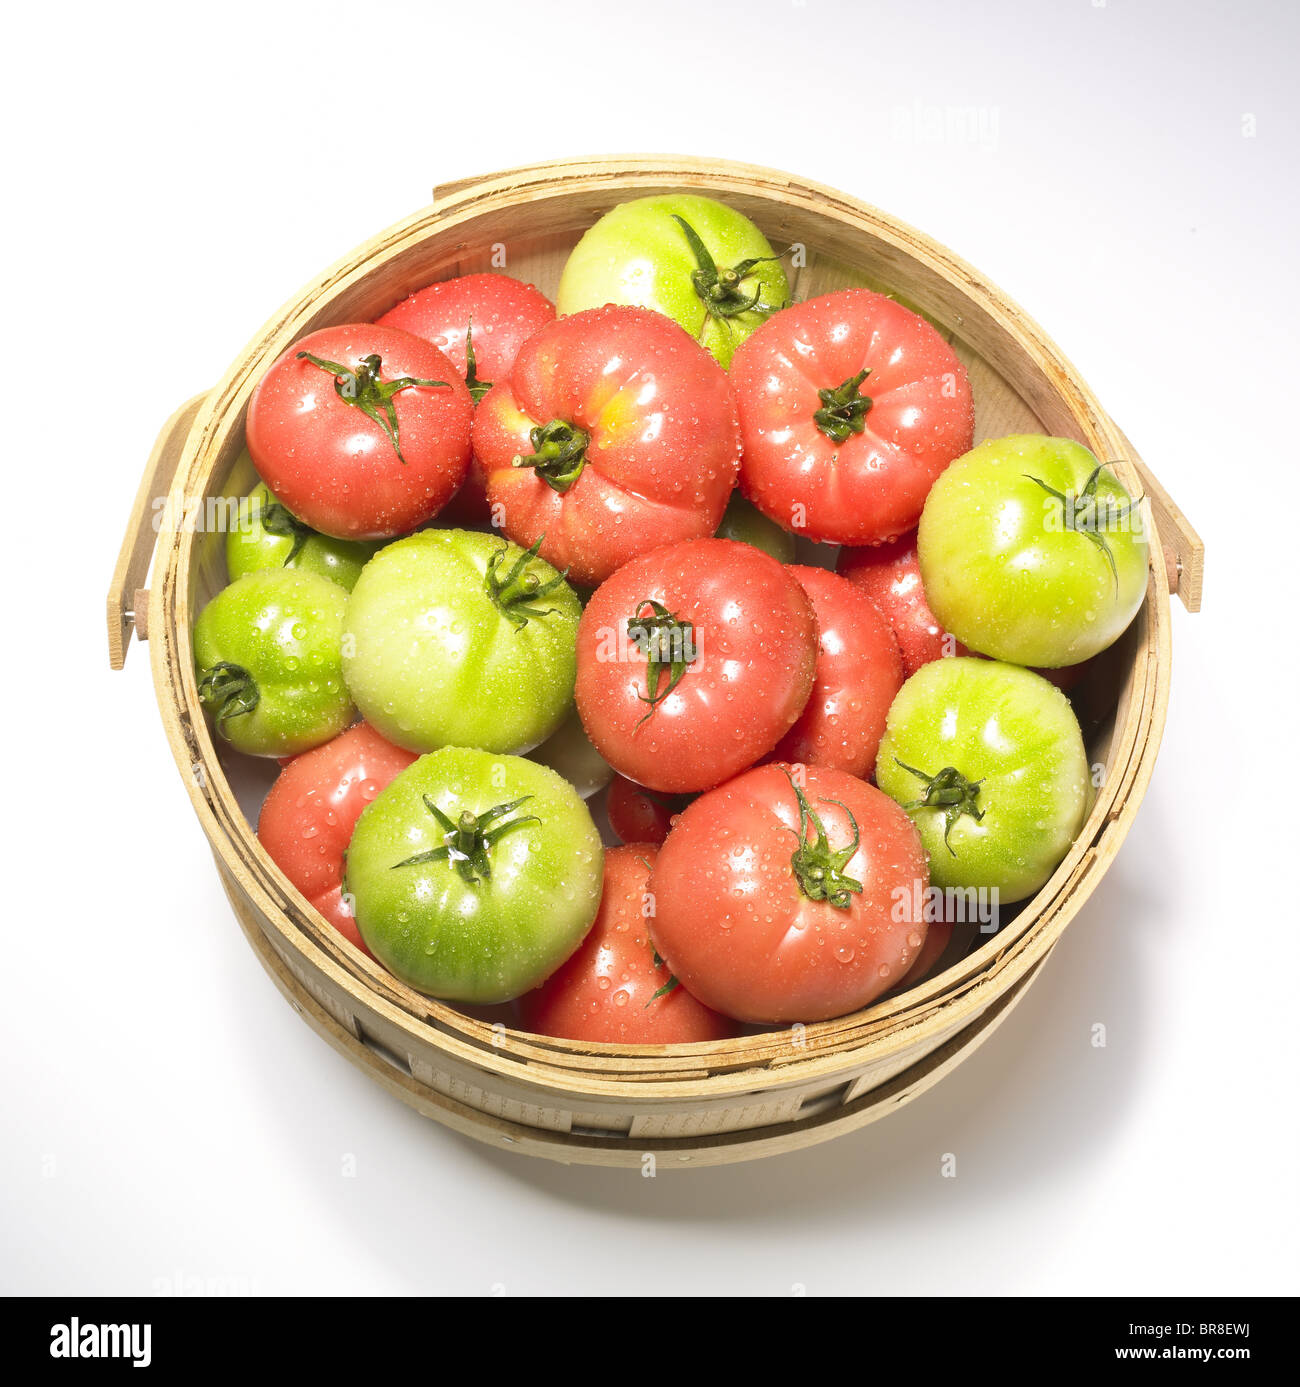 Les tomates rouges et verts dans le panier, fond blanc Banque D'Images